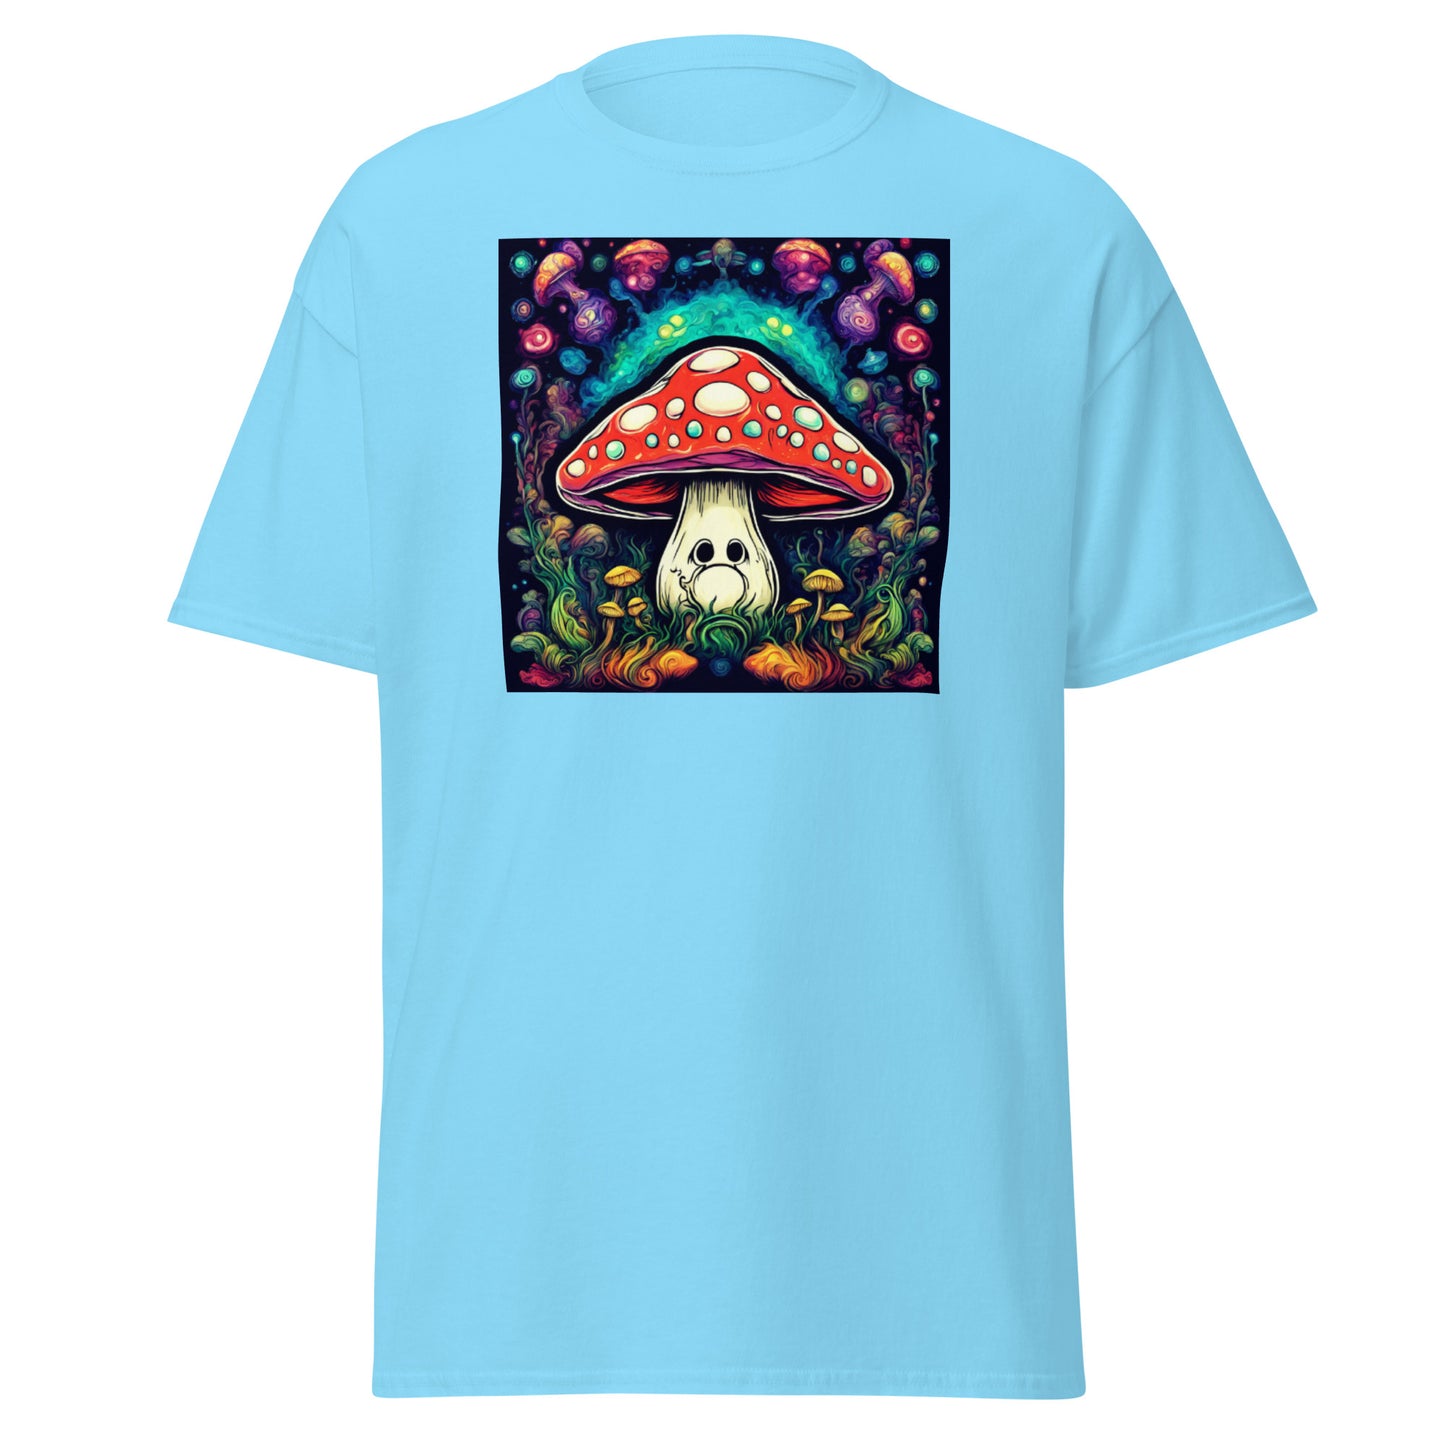 Men's trippy Mushroom shirt